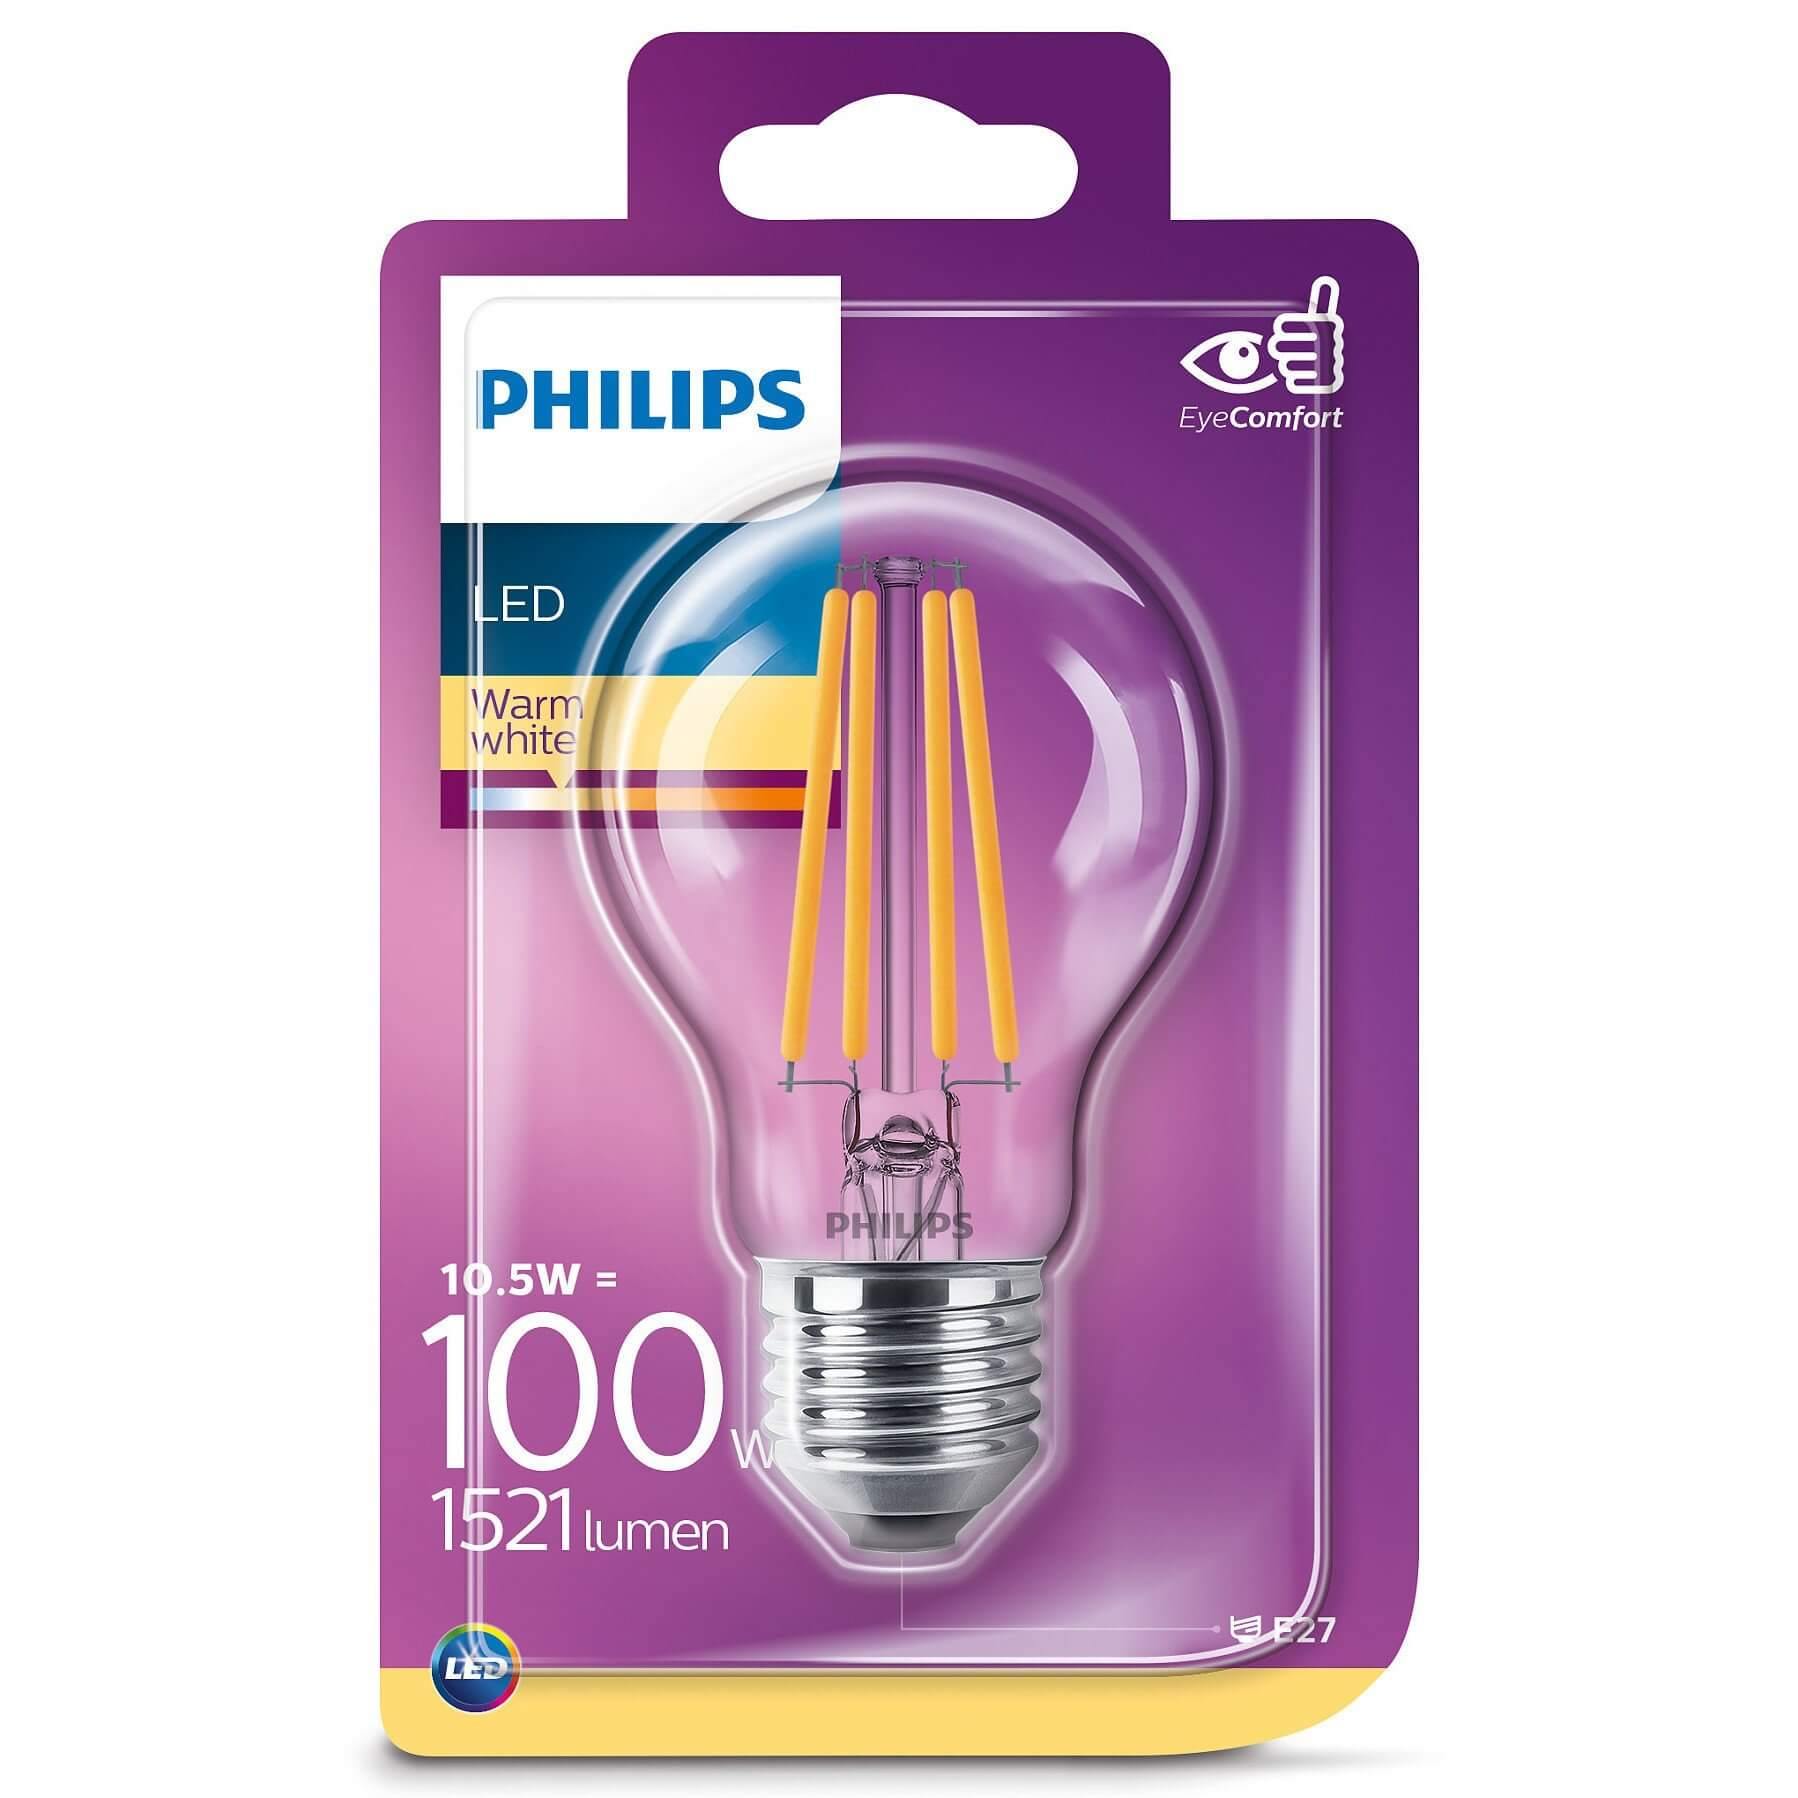 Domicilio Bec LED Philips A67 E27 11W 1521 lumeni, cu filament pentru corpuri de iluminat, lustre, veioze sau lampadare